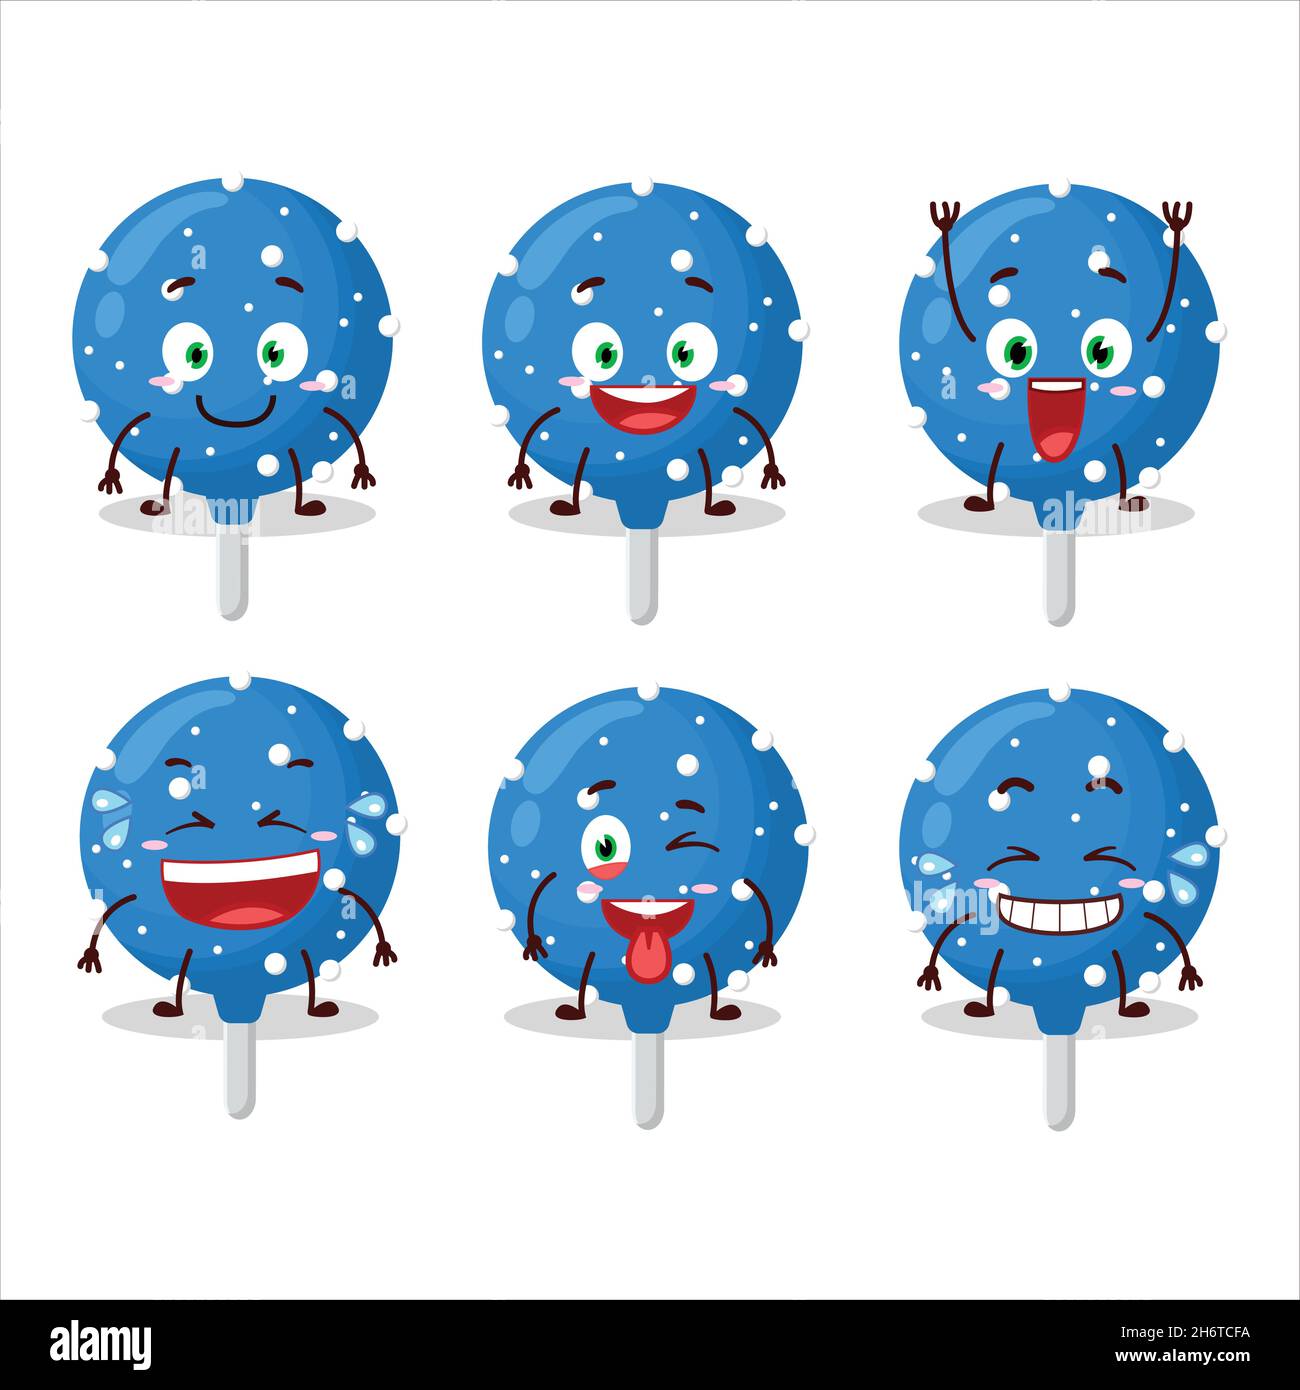 Personaggio cartoon di caramelle blu fiocchi di neve con espressione del sorriso. Illustrazione vettoriale Illustrazione Vettoriale